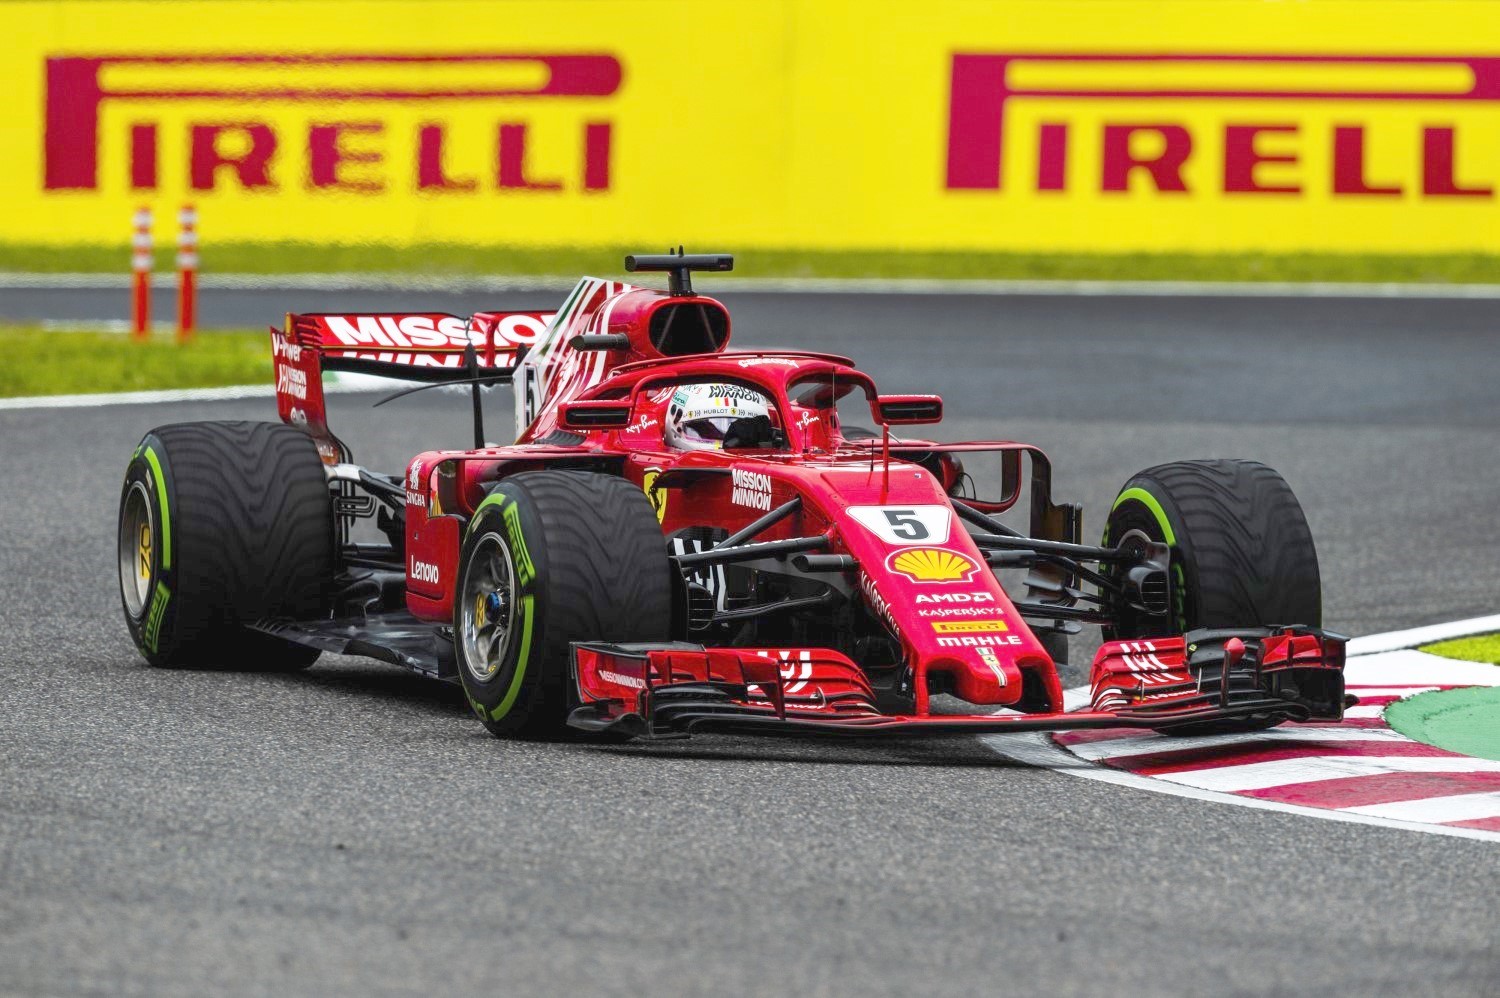 Vettel in the hapless Ferrari on Intermediates when he should have been on slicks